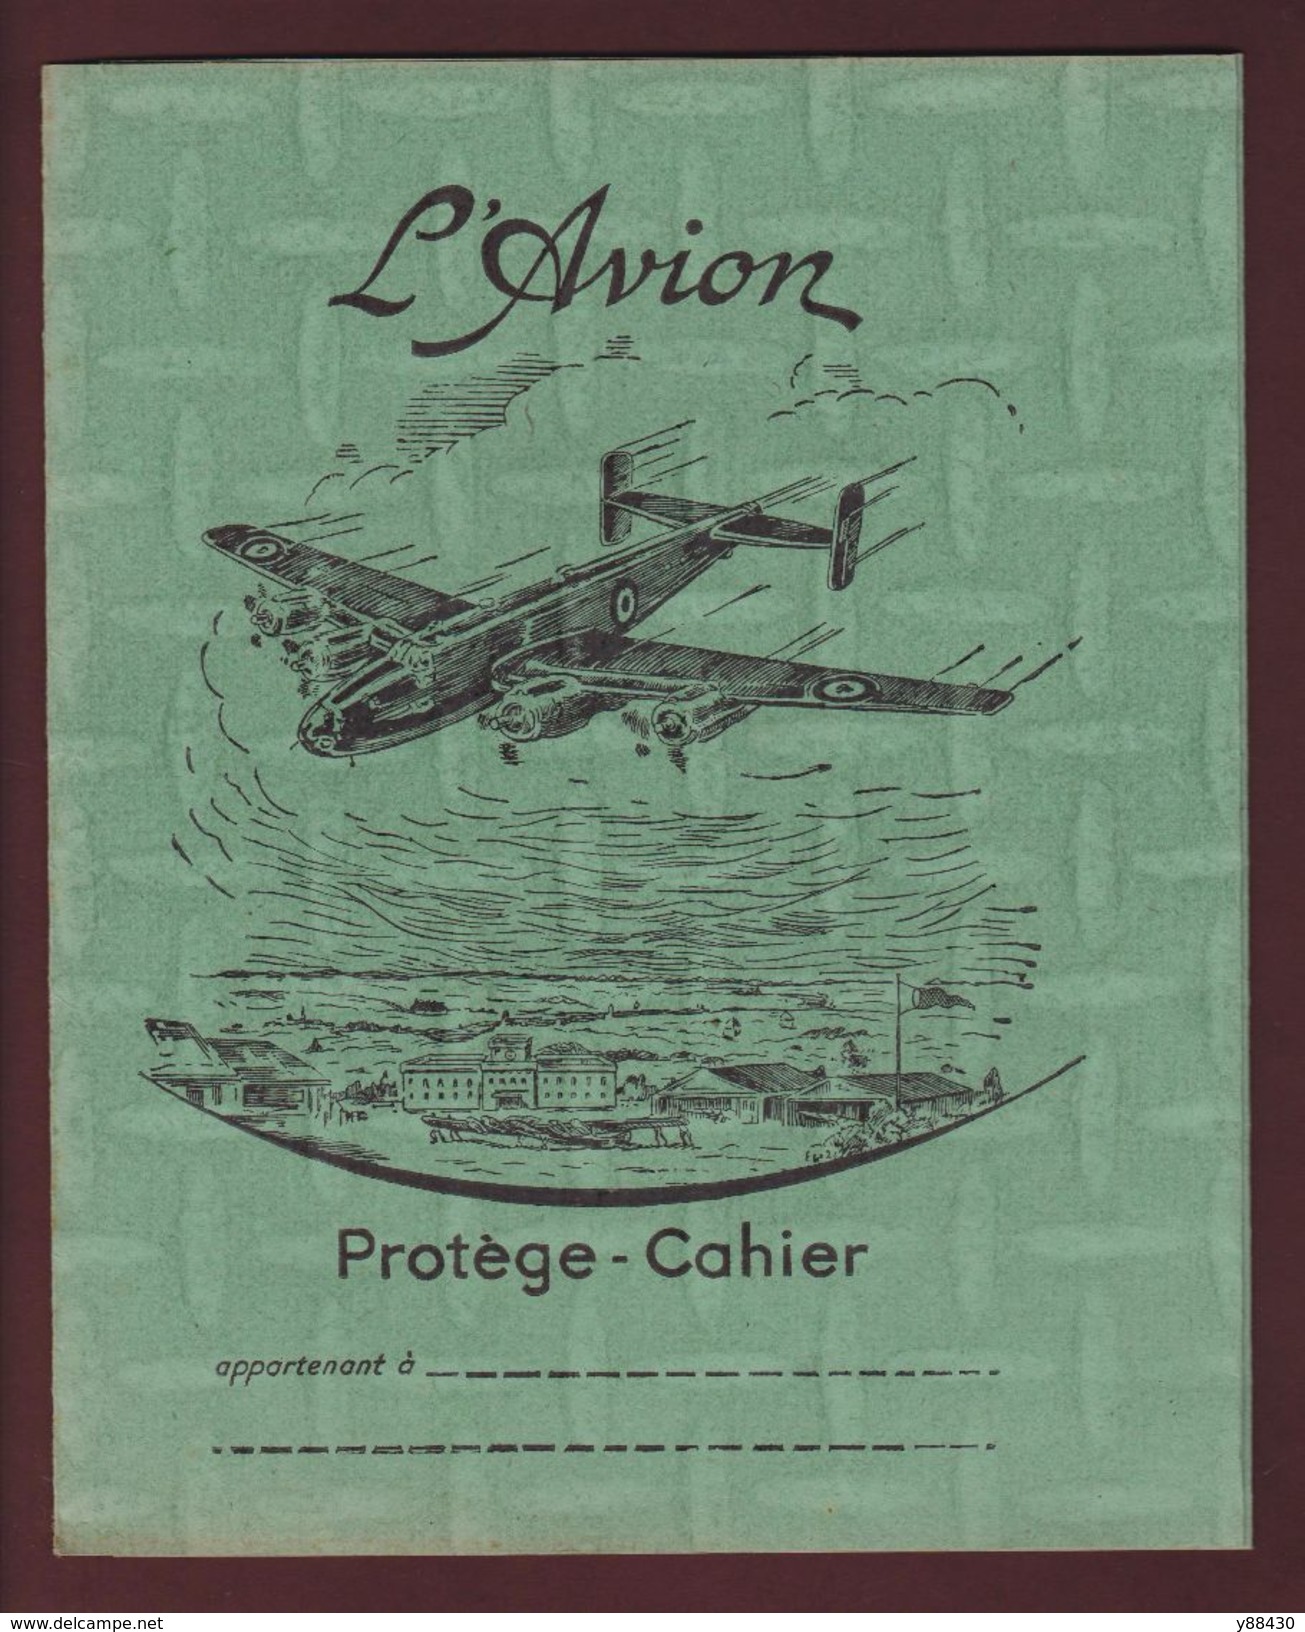 PROTEGE-CAHIER - L'AVION - 4 Volets, 70 Cm Dépliés - Coloris Vert - Voir Les 4 Scannes - Book Covers